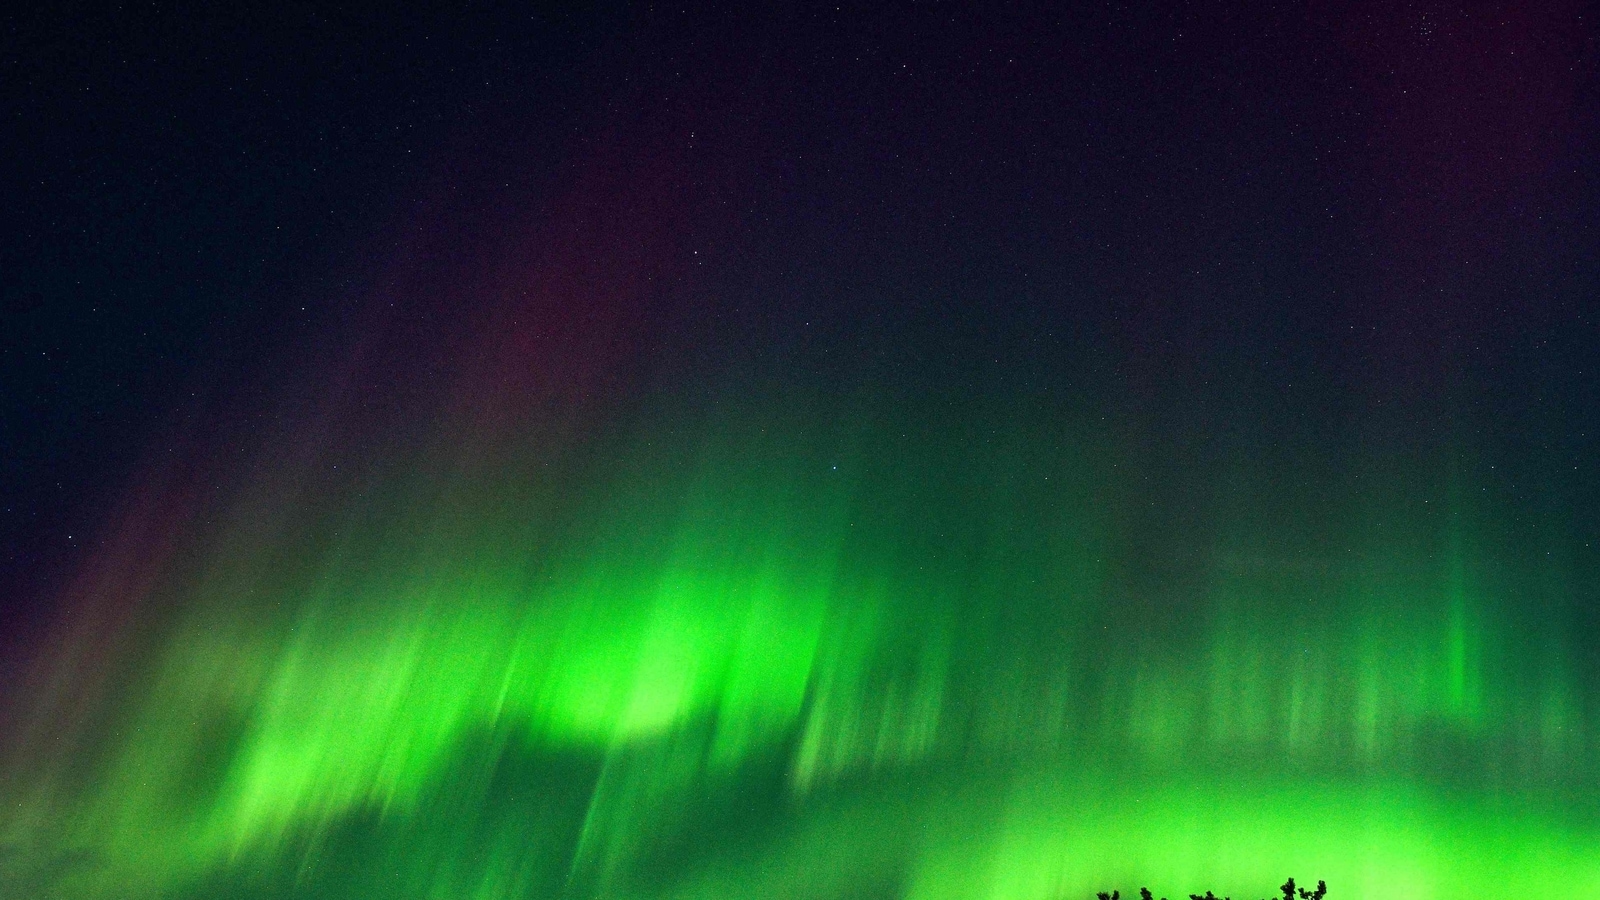 De enorme geomagnetische storm veroorzaakt een prachtige aurora!  Een man regelt het tijdens de vlucht |  Hij kijkt